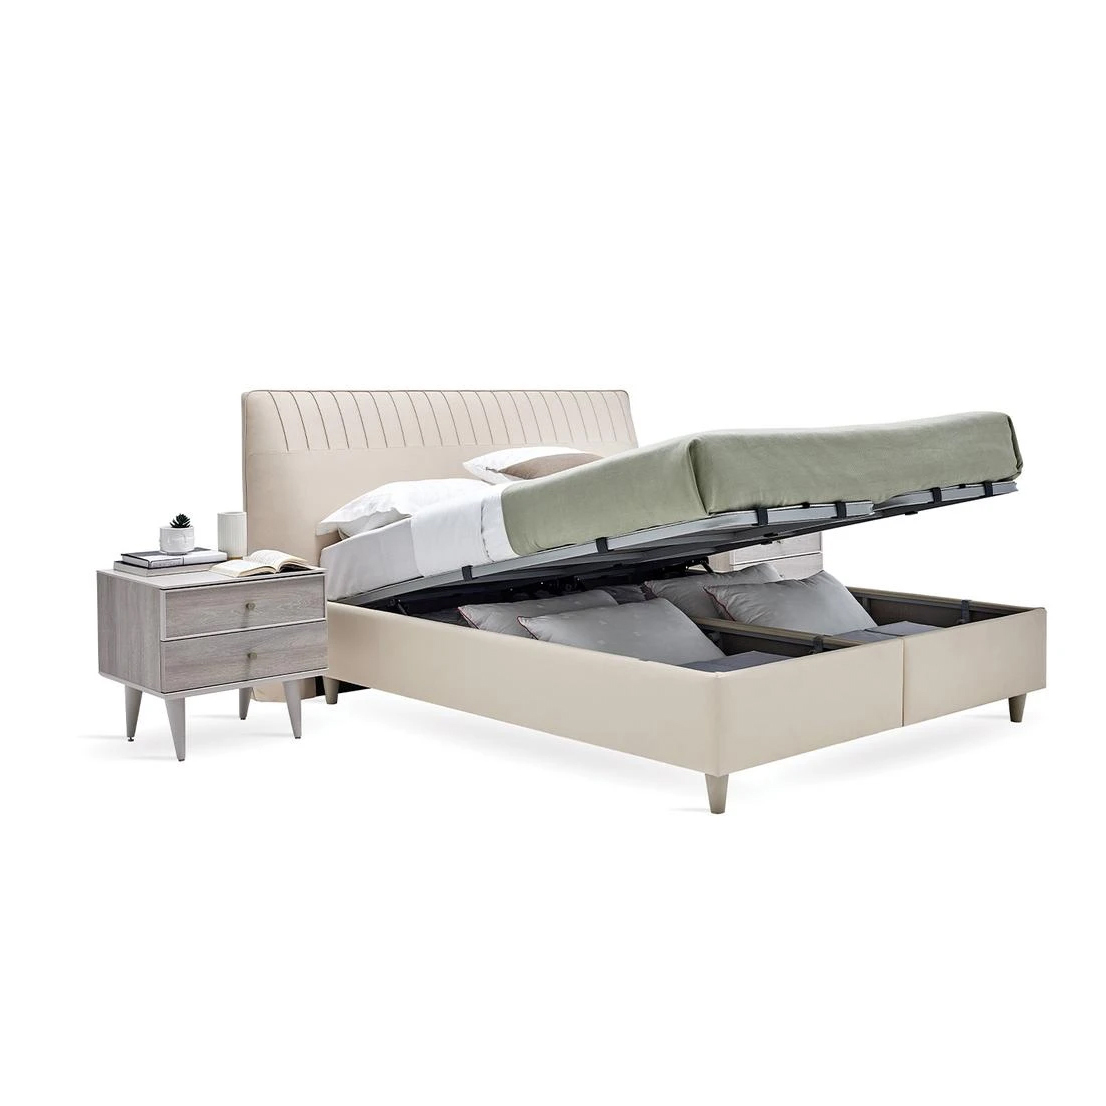 Кровать Enza Home Basel, 180х200 см, с подъемным механизмом, кремовый 3001-K1-52102 (EH59536+EH59555)EH59536+EH59555